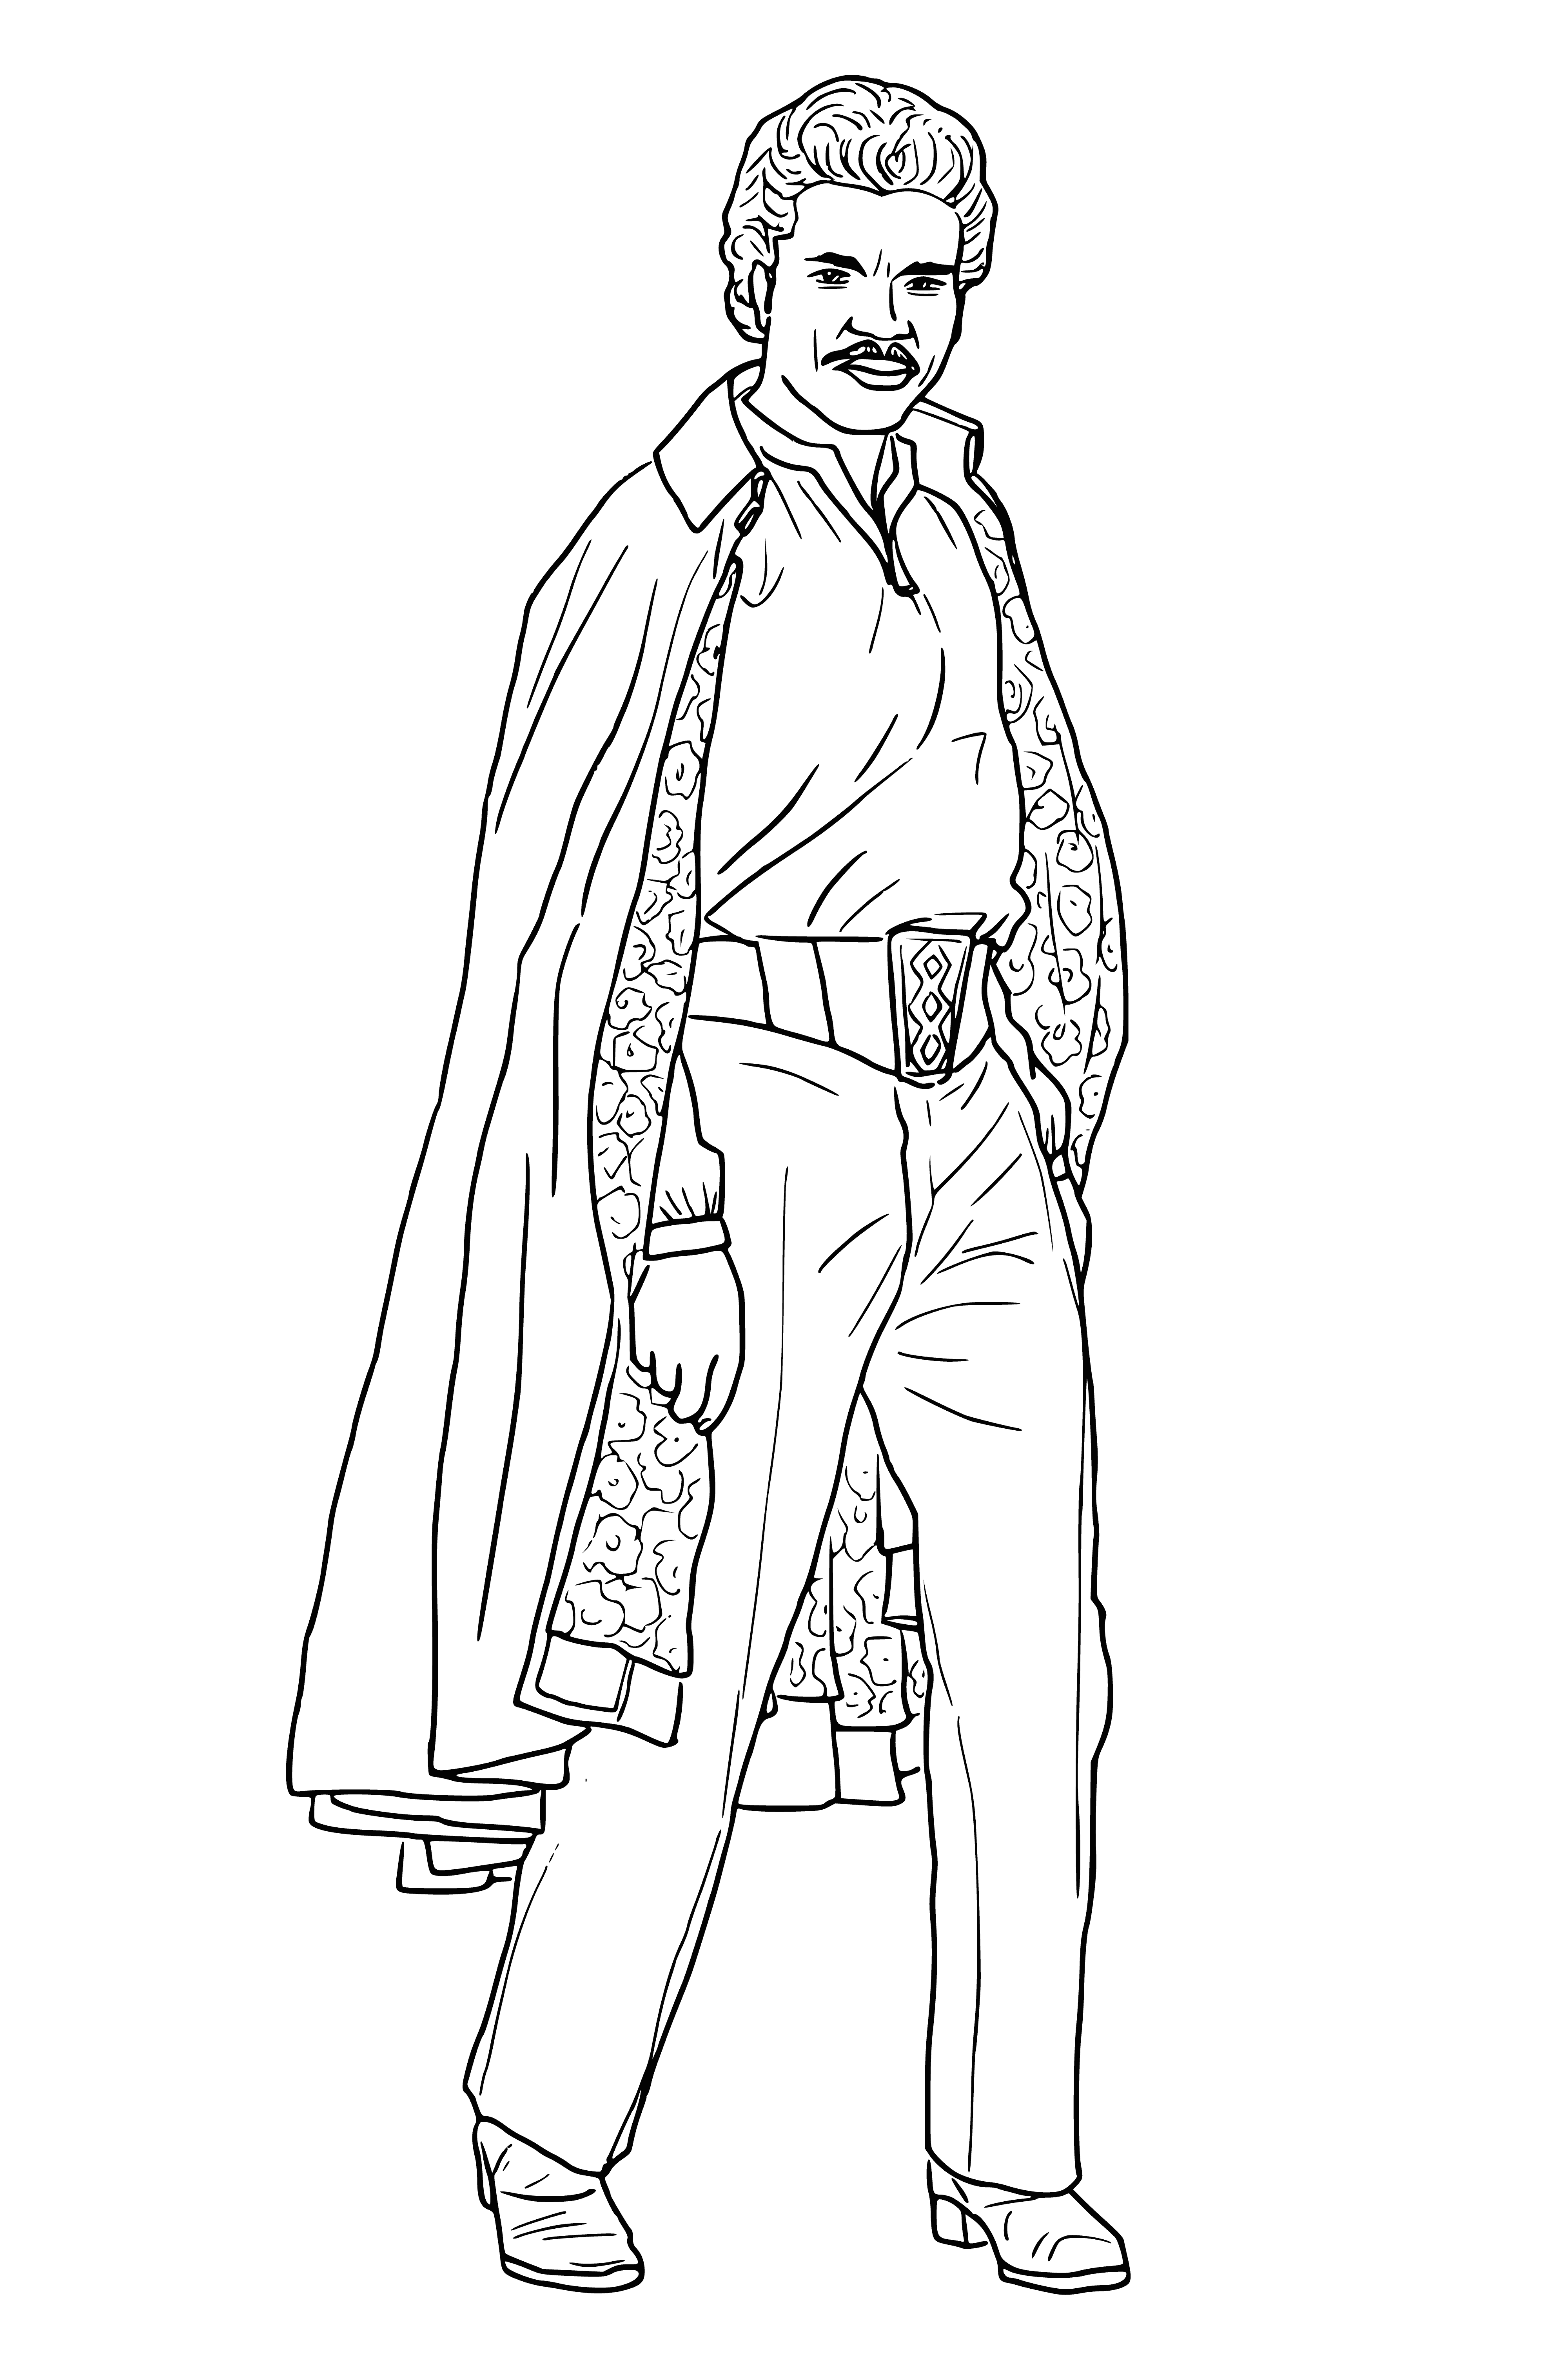 Lando Calrissian coloring page